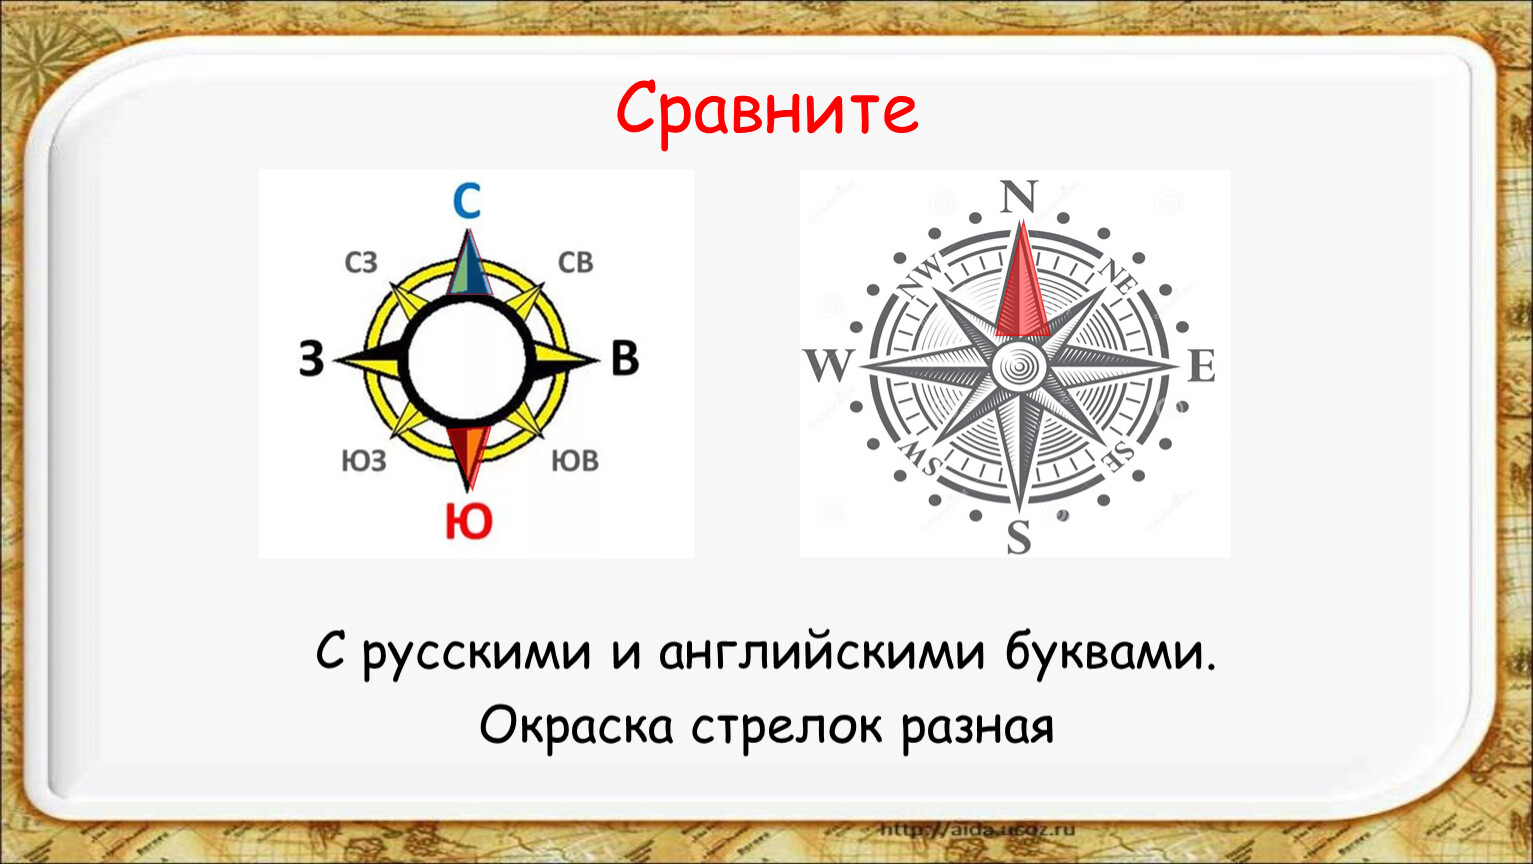 Компас n w. Компас с русскими и английскими буквами. Стороны света на компасе.